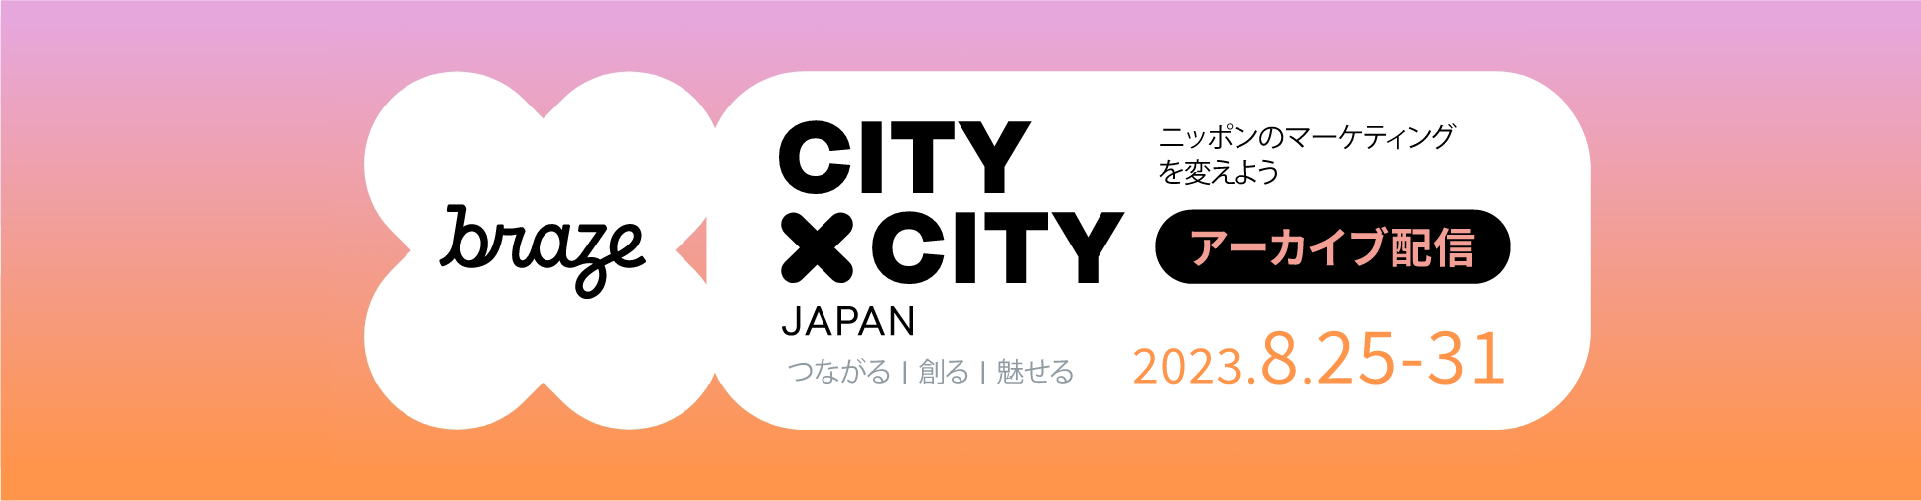 Braze City x City JAPAN